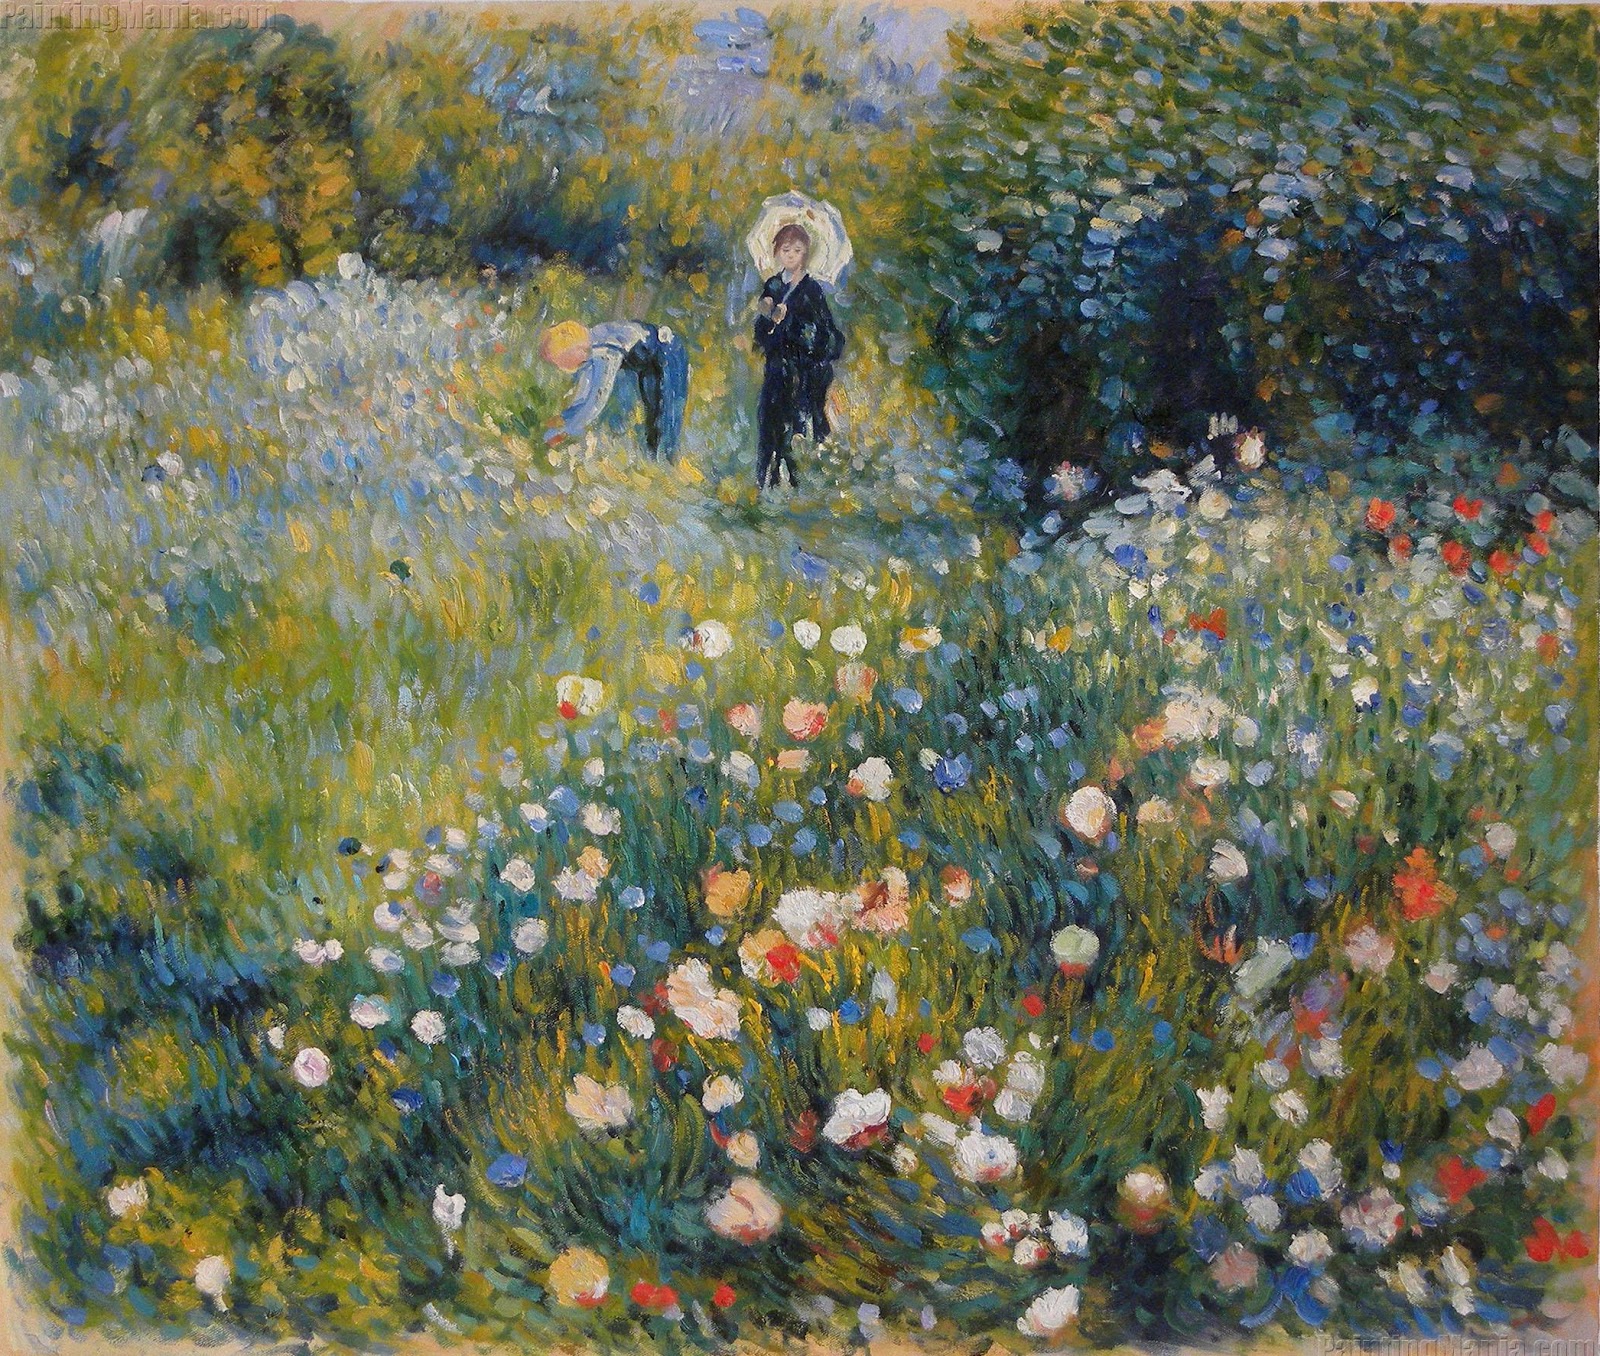 Pierre+Auguste+Renoir-1841-1-19 (645).jpg